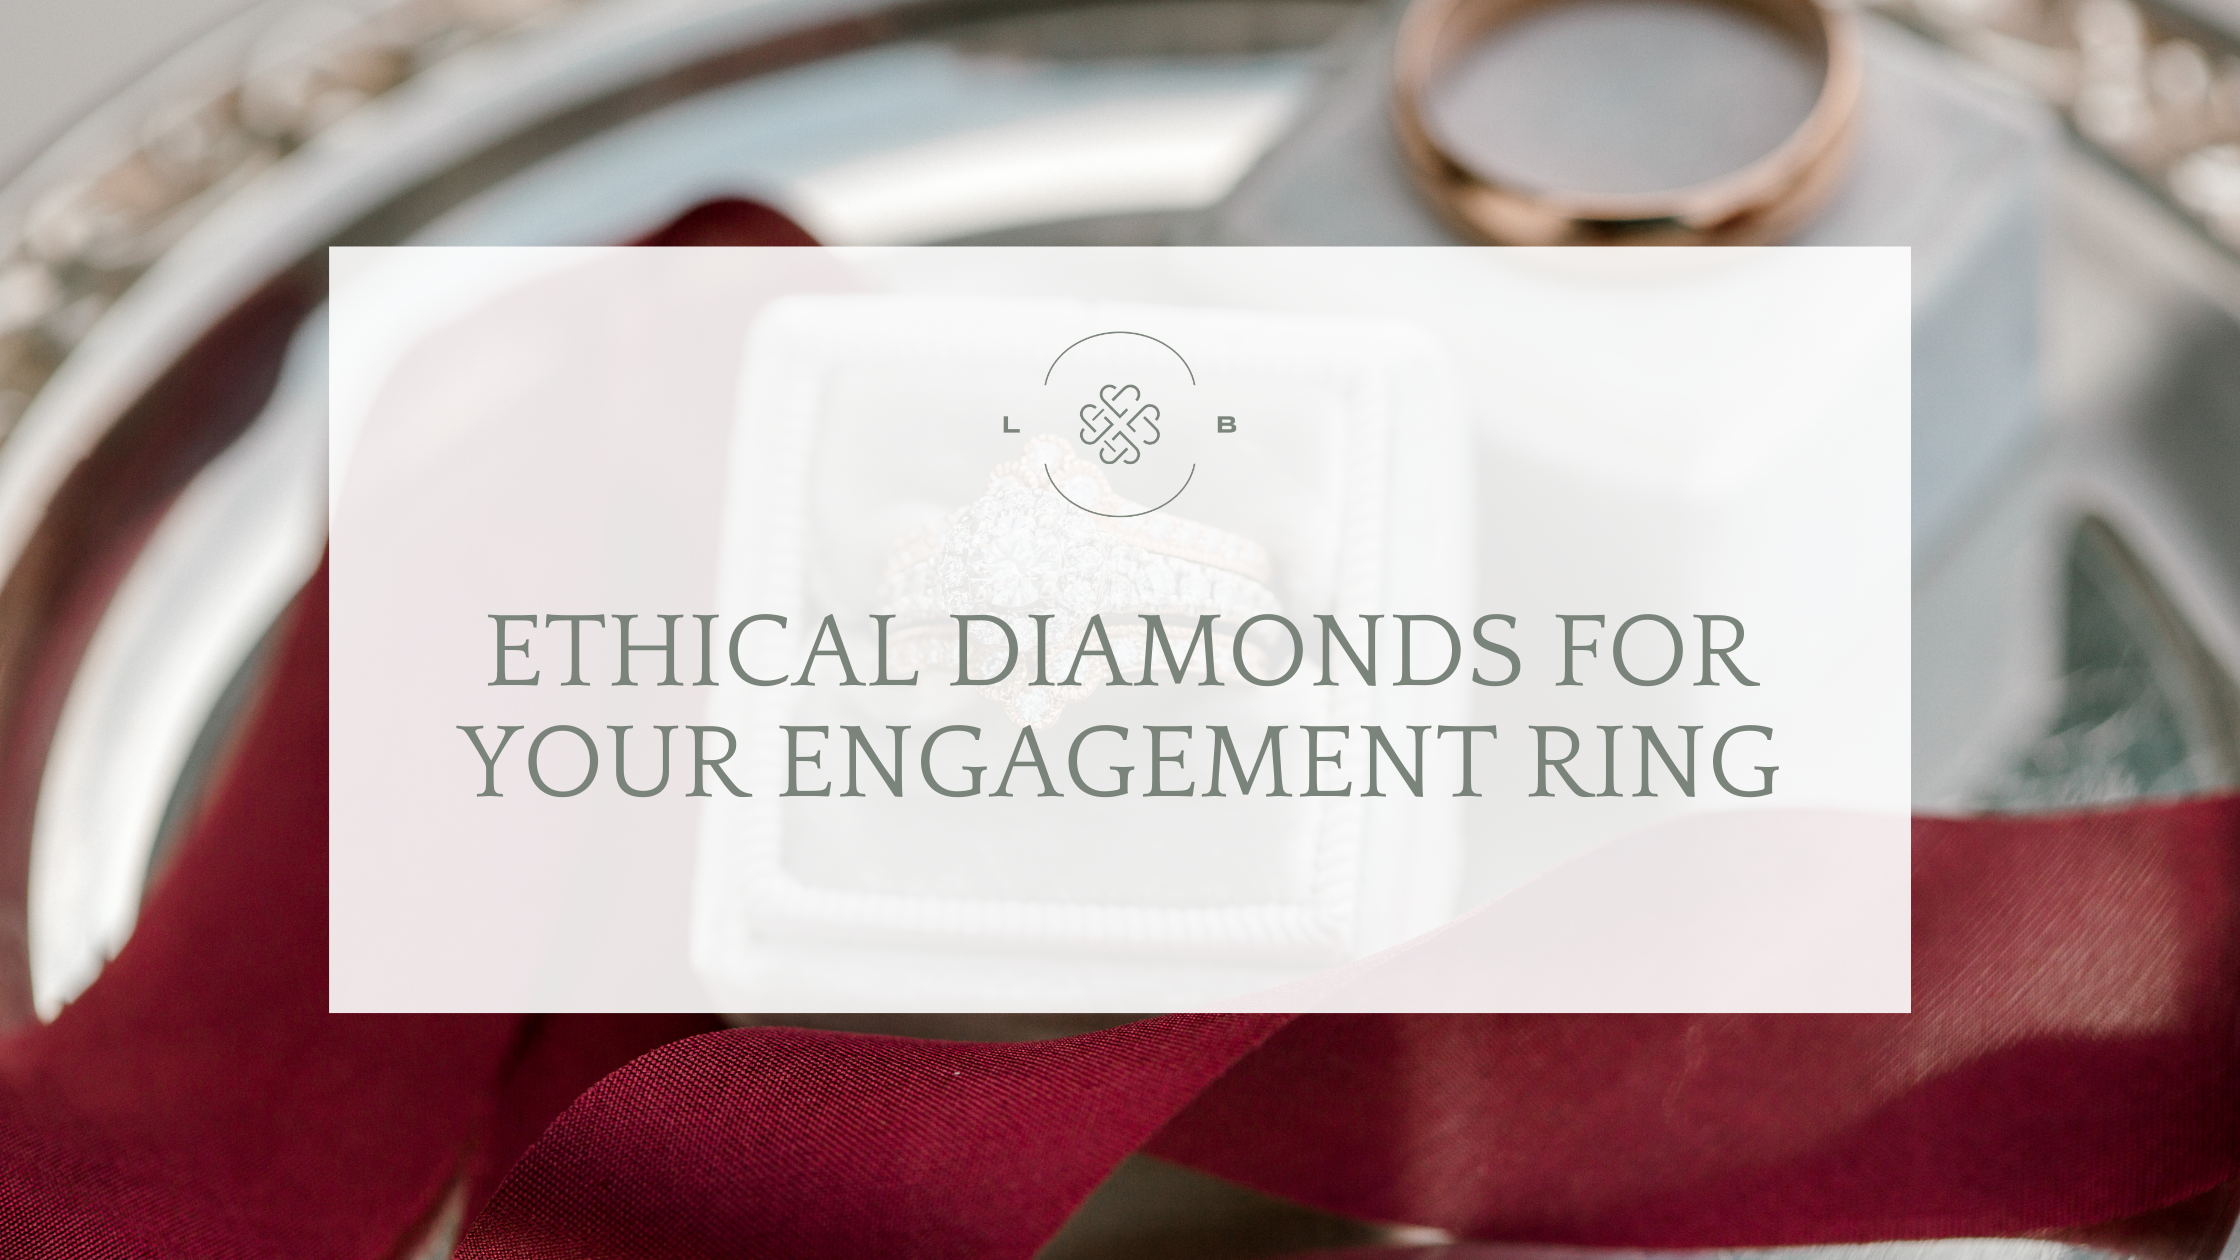 Engagement ring, emerald engagement ring, ethical diamond, lab created diamond, diamond wedding band